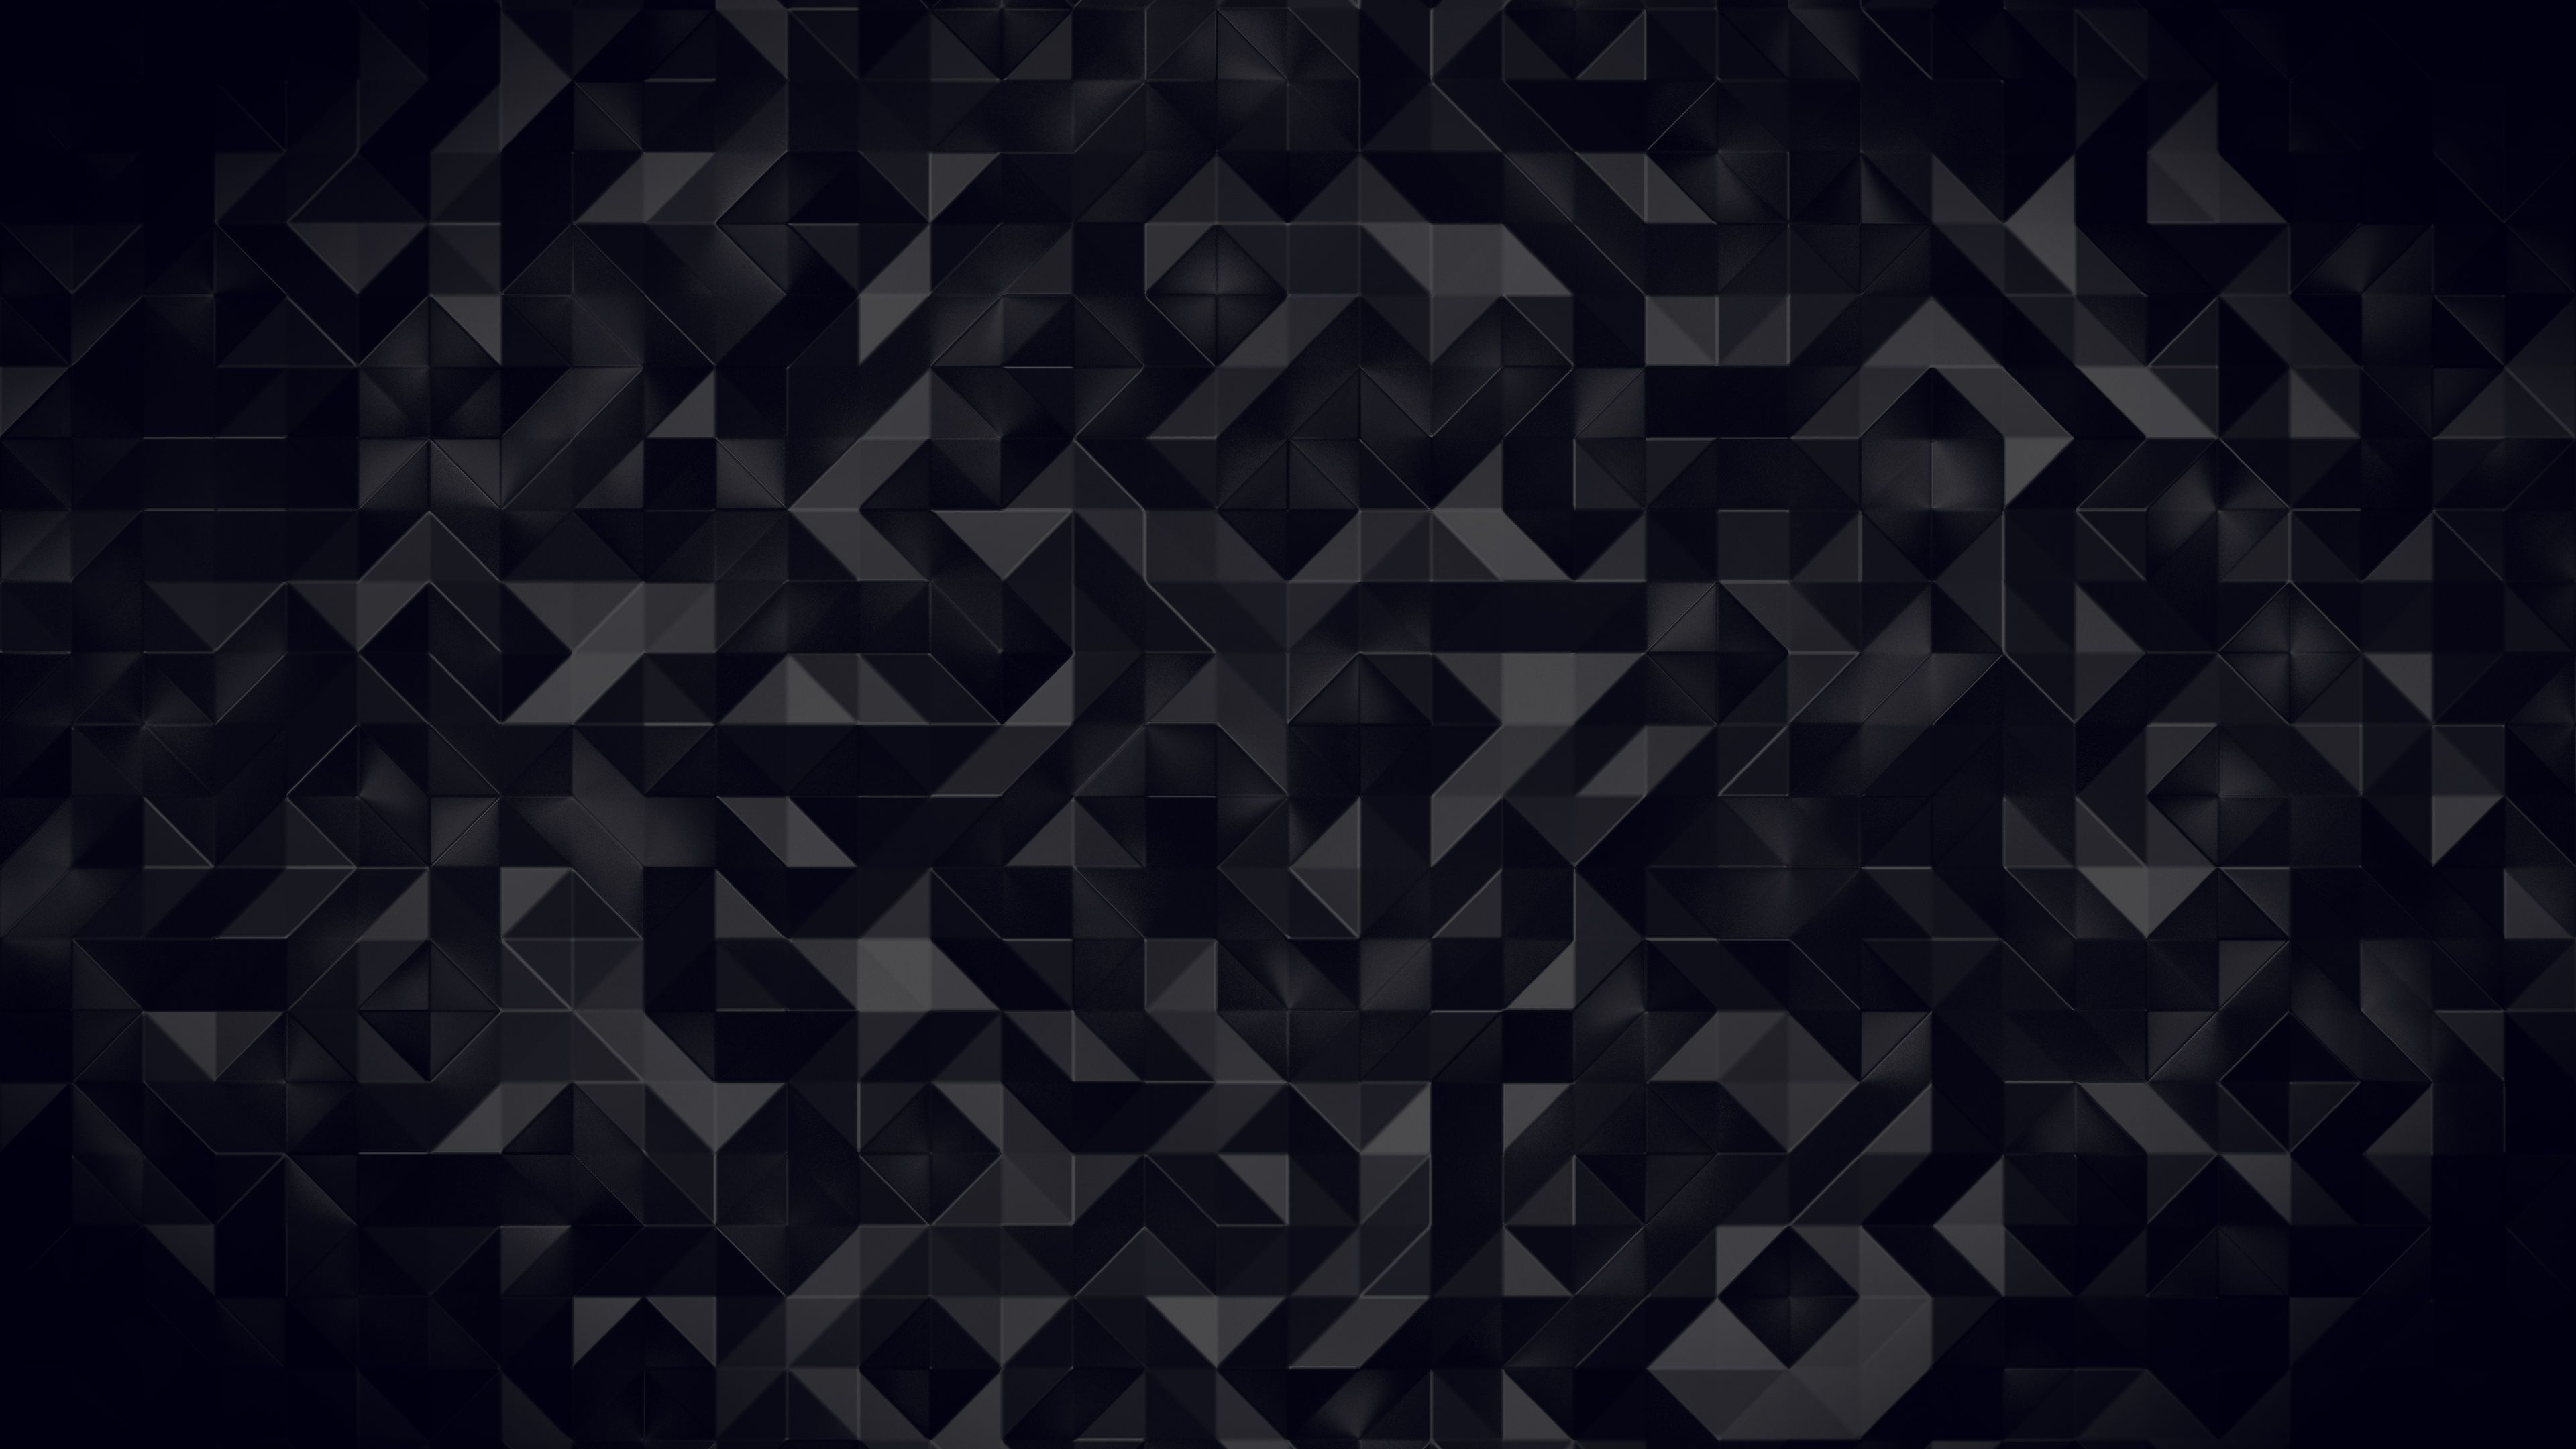 Black And White Triangle PC Wallpapers: Hình nền tam giác đen trắng Tam giác đen trắng là một trong những niềm đam mê của nhiều người yêu thiết kế. Kết hợp với màu sắc đen trắng độc đáo, những hình nền tam giác sẽ giúp tạo nên một không gian độc đáo, tuyệt đẹp trên màn hình PC của bạn. 